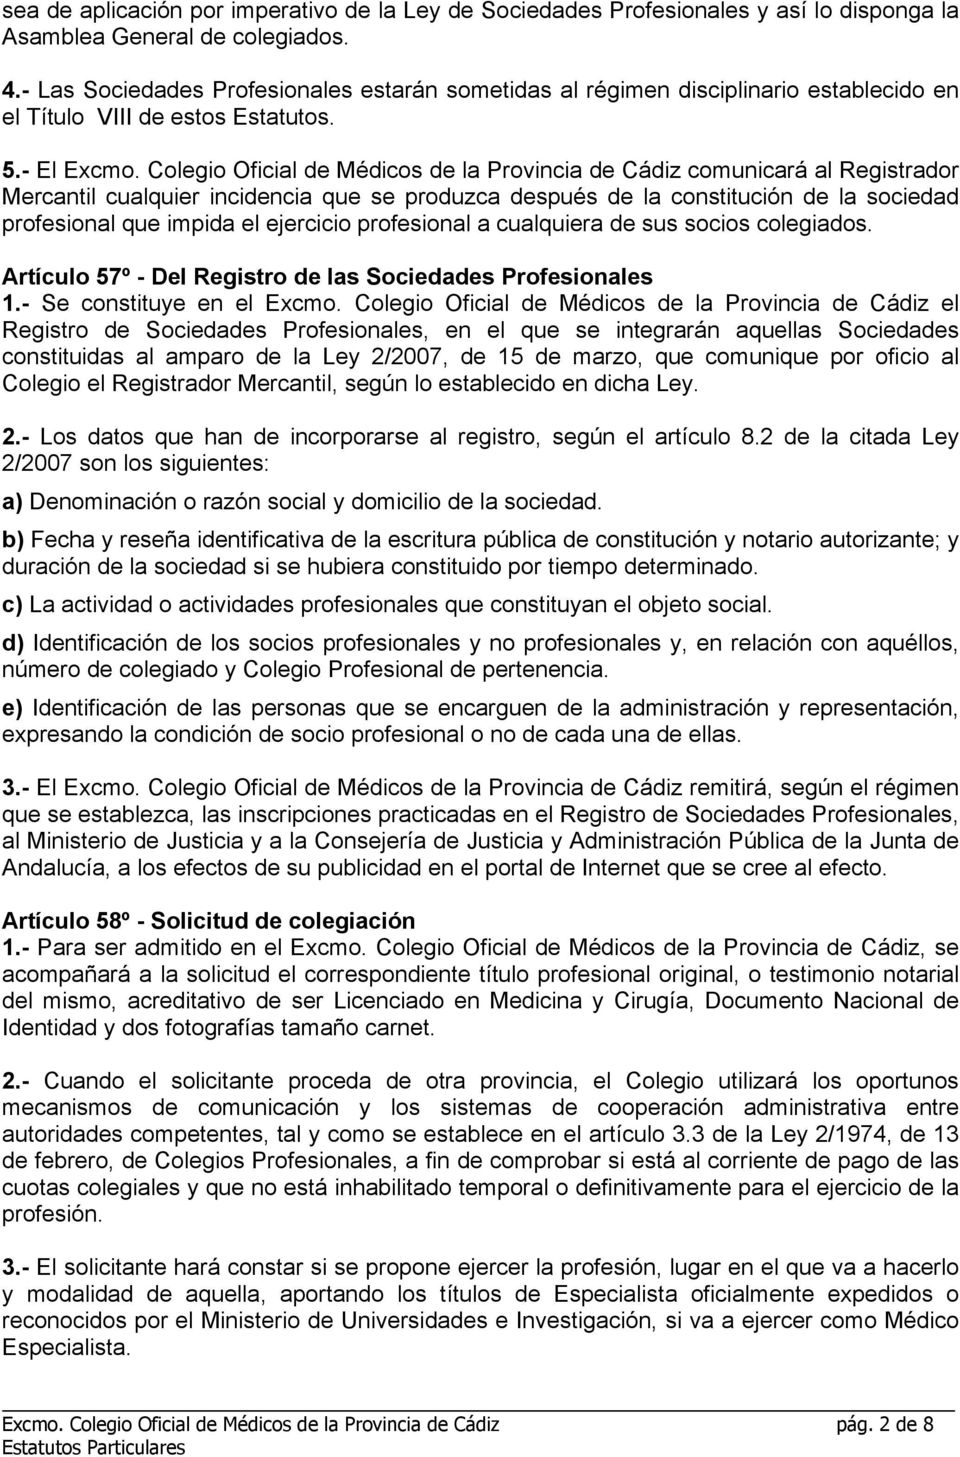 Colegio Oficial de Médicos de la Provincia de Cádiz comunicará al Registrador Mercantil cualquier incidencia que se produzca después de la constitución de la sociedad profesional que impida el